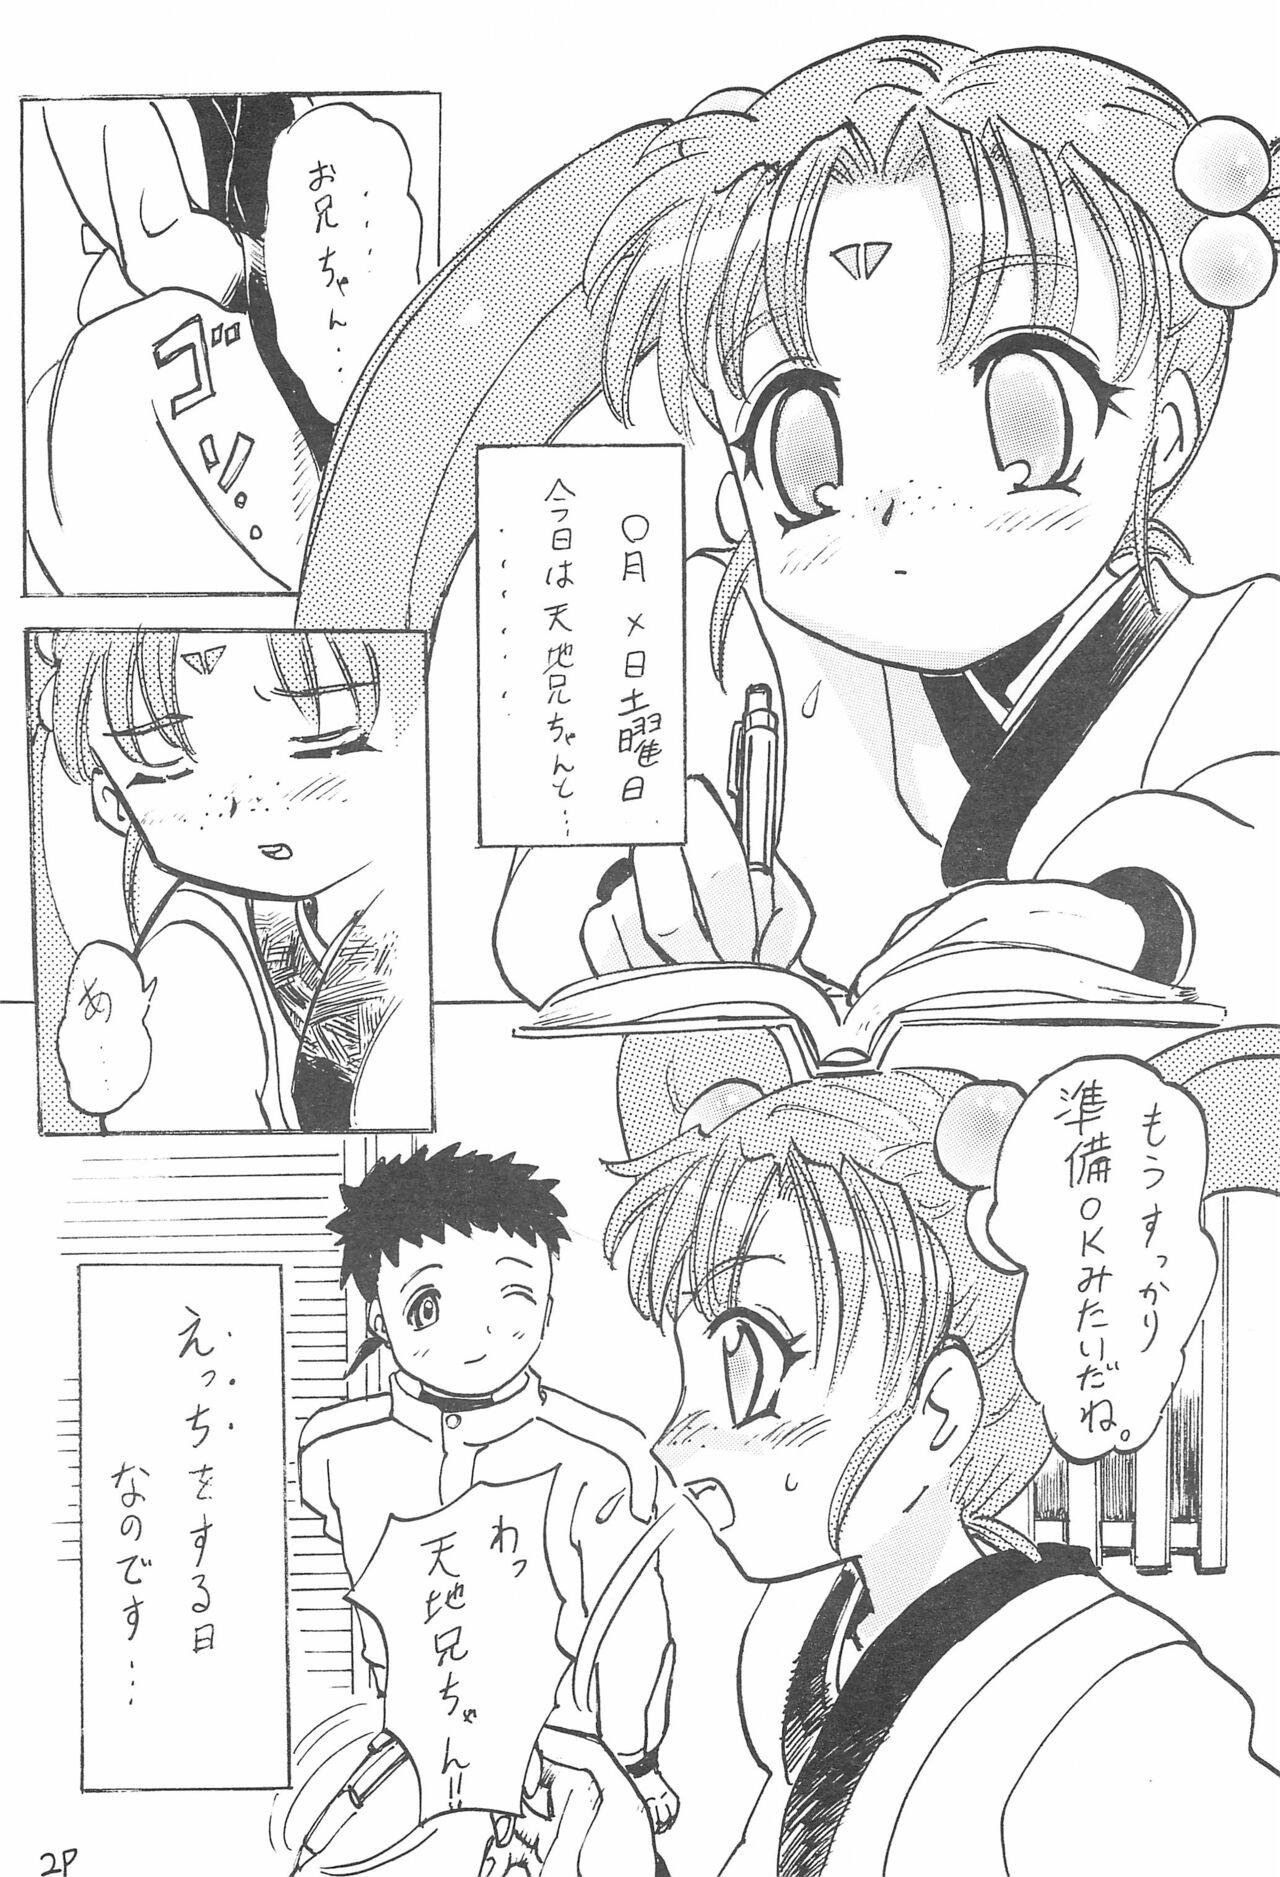 Alt Aniome Imouto Ou 1 - Cardcaptor sakura Tenchi muyo From - Page 6